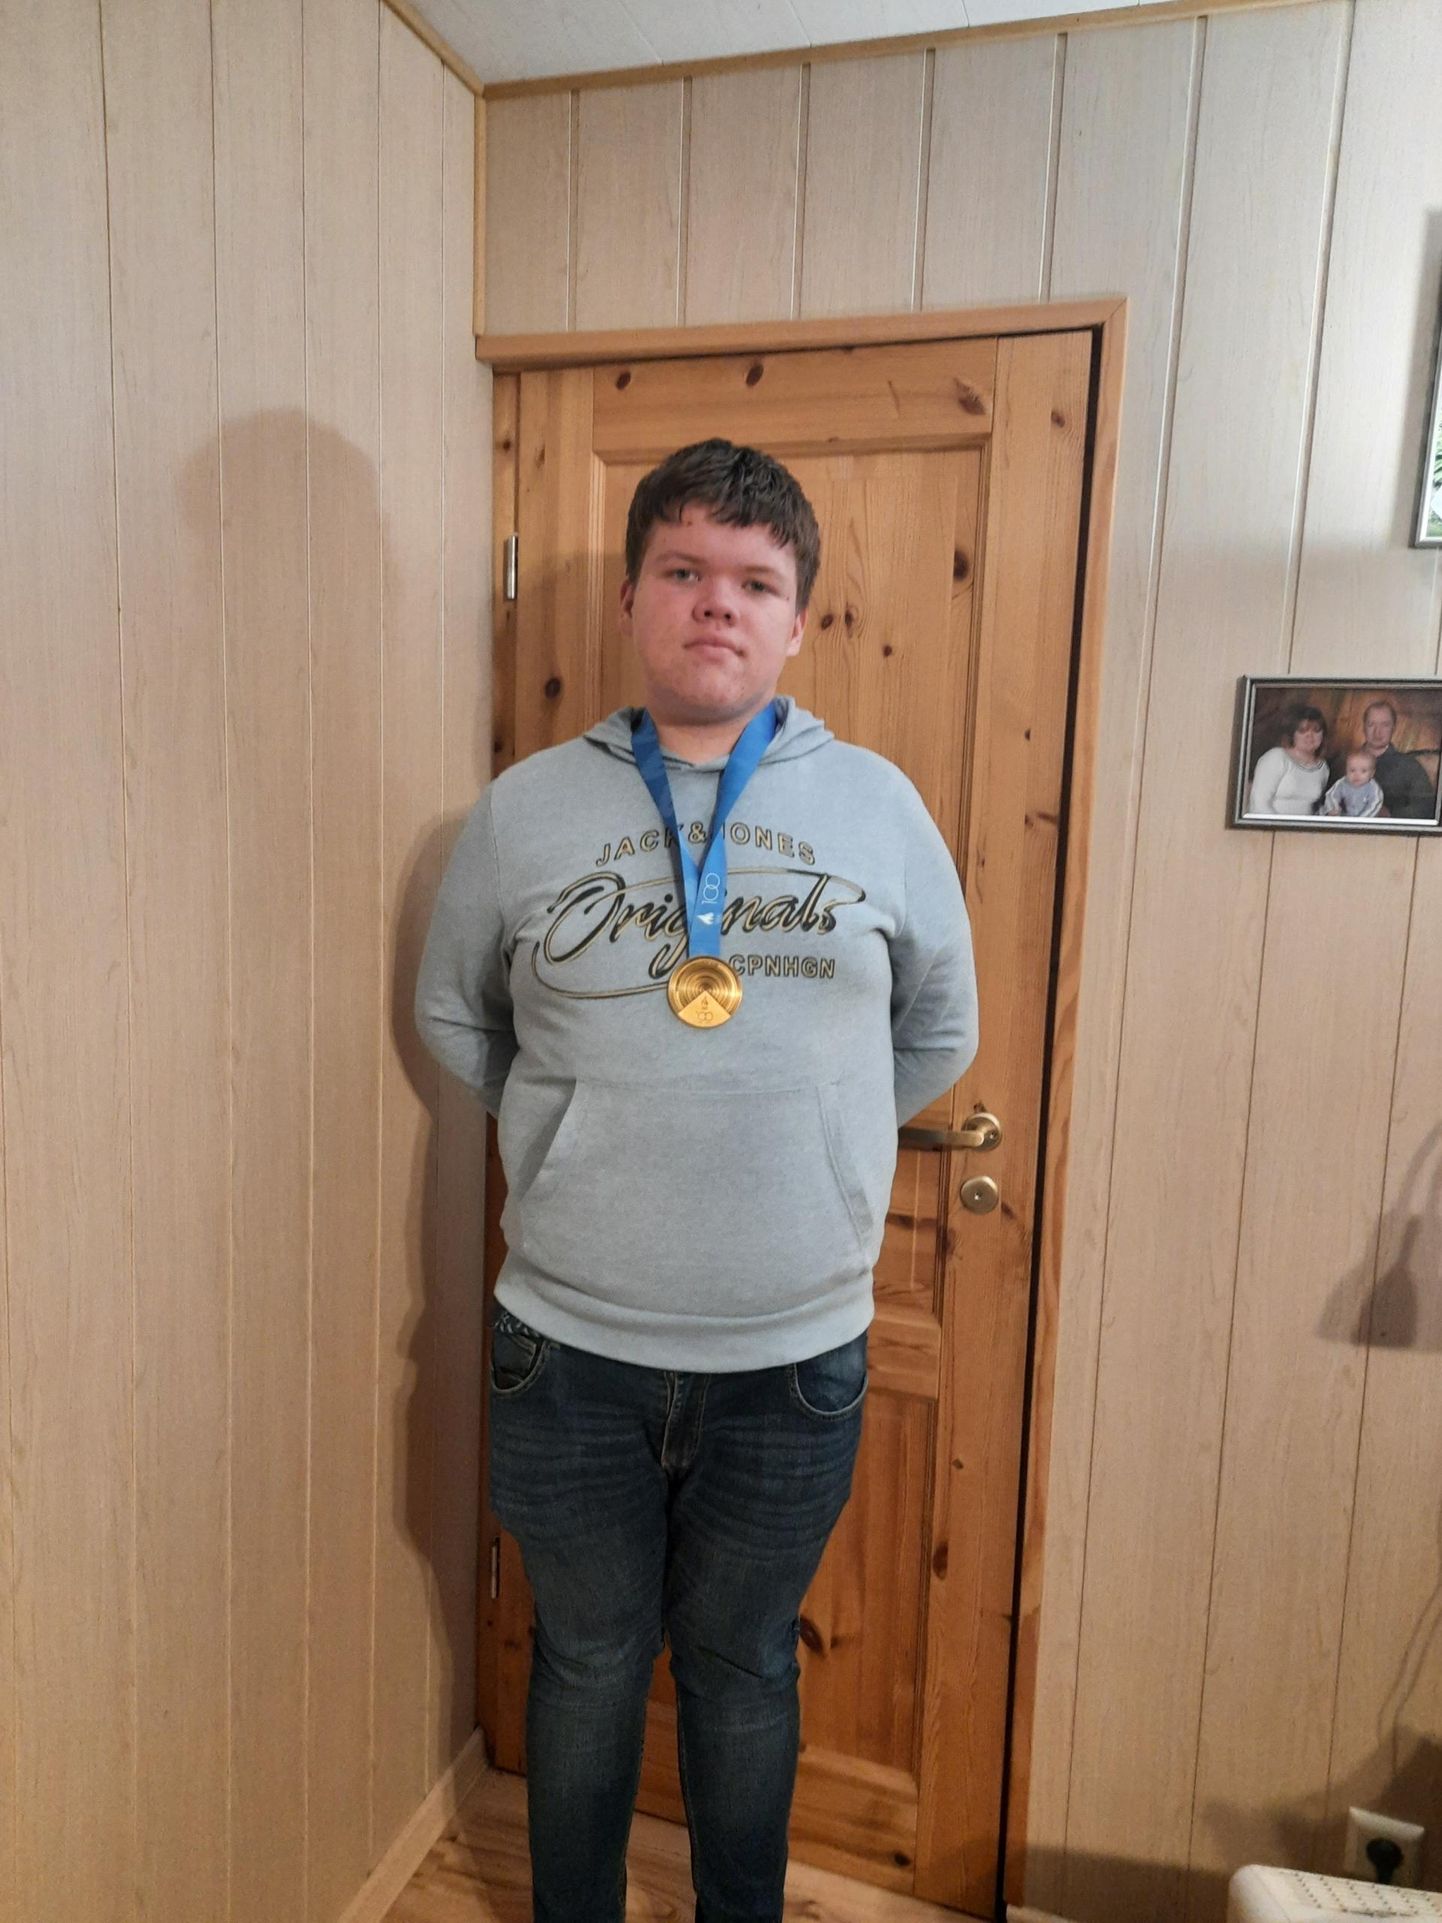 15-aastane Keir-Christian Sugul Eesti meistrivõistlustel kiirkabes võidetud kuldmedaliga.